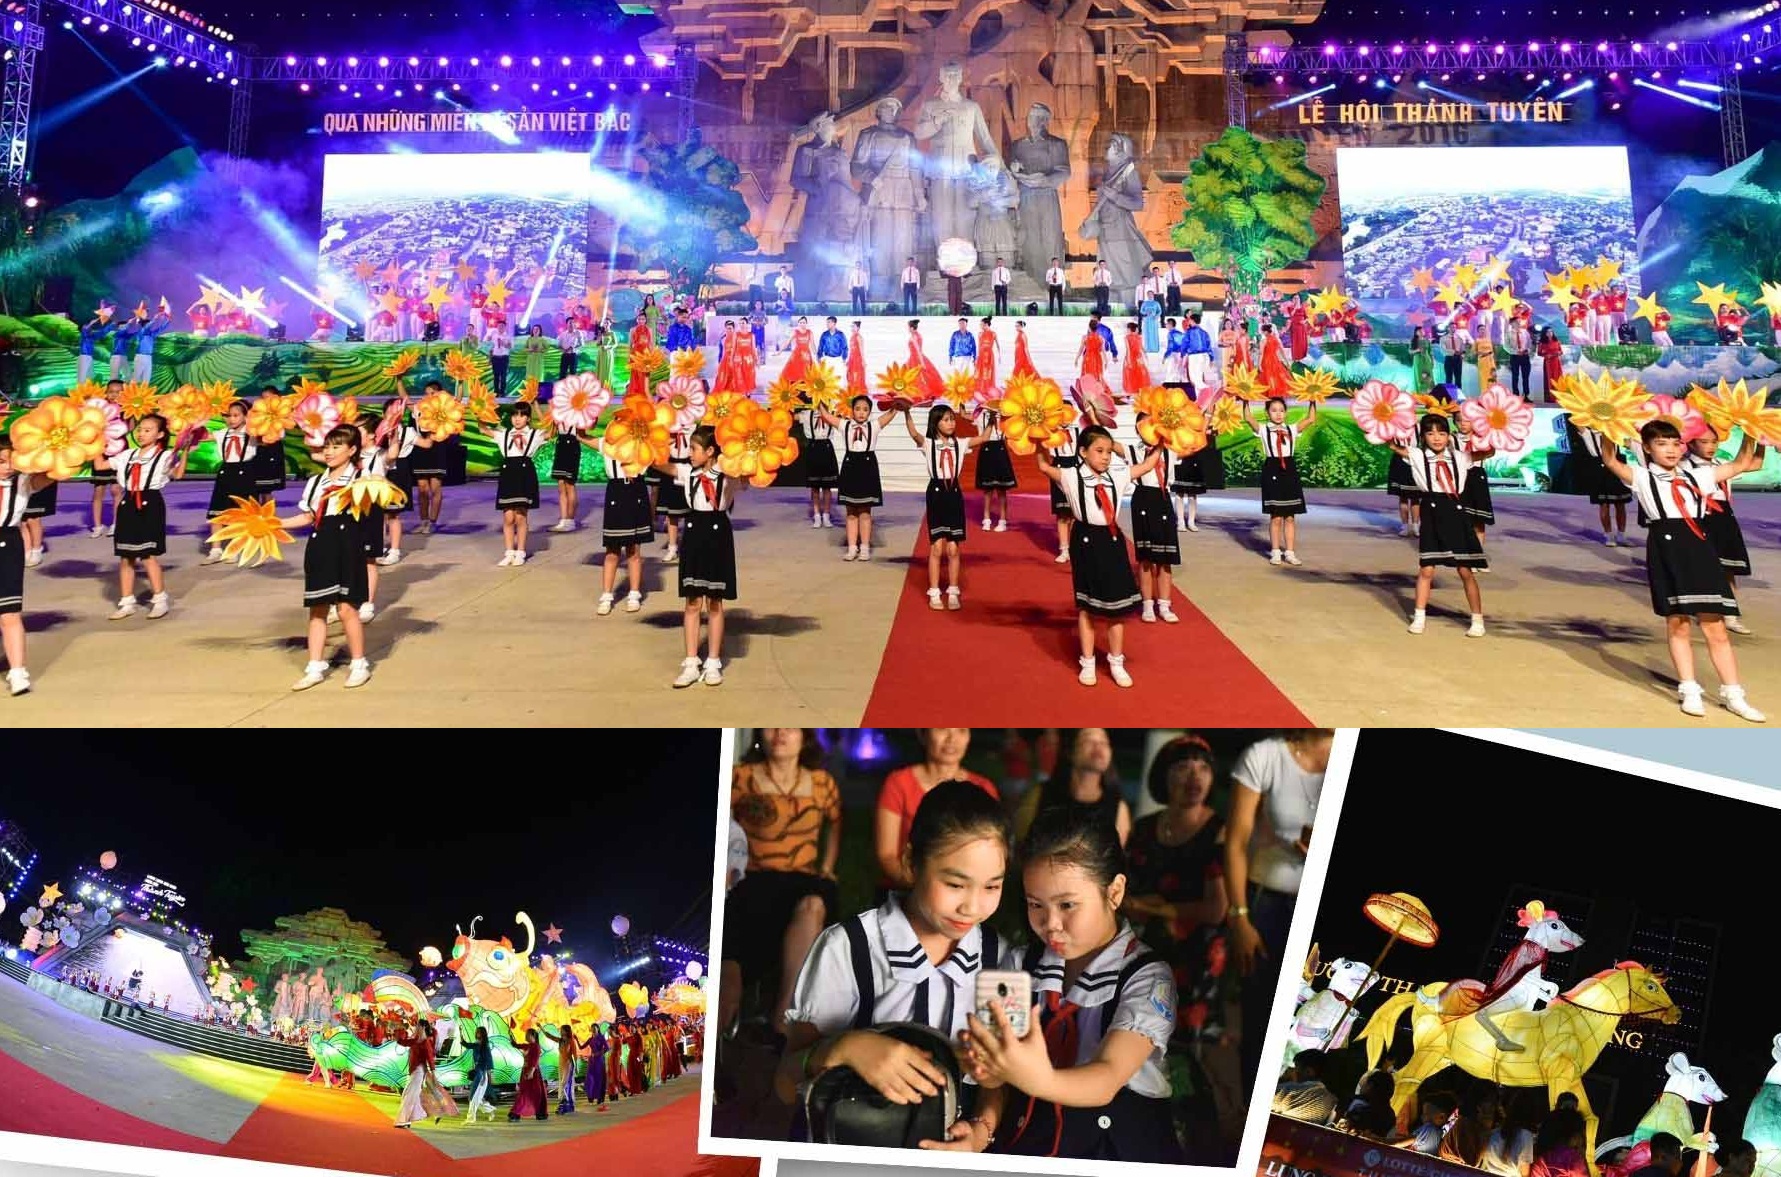 Các hoạt động trong khuôn khổ Lễ hội Thành Tuyên năm 2023